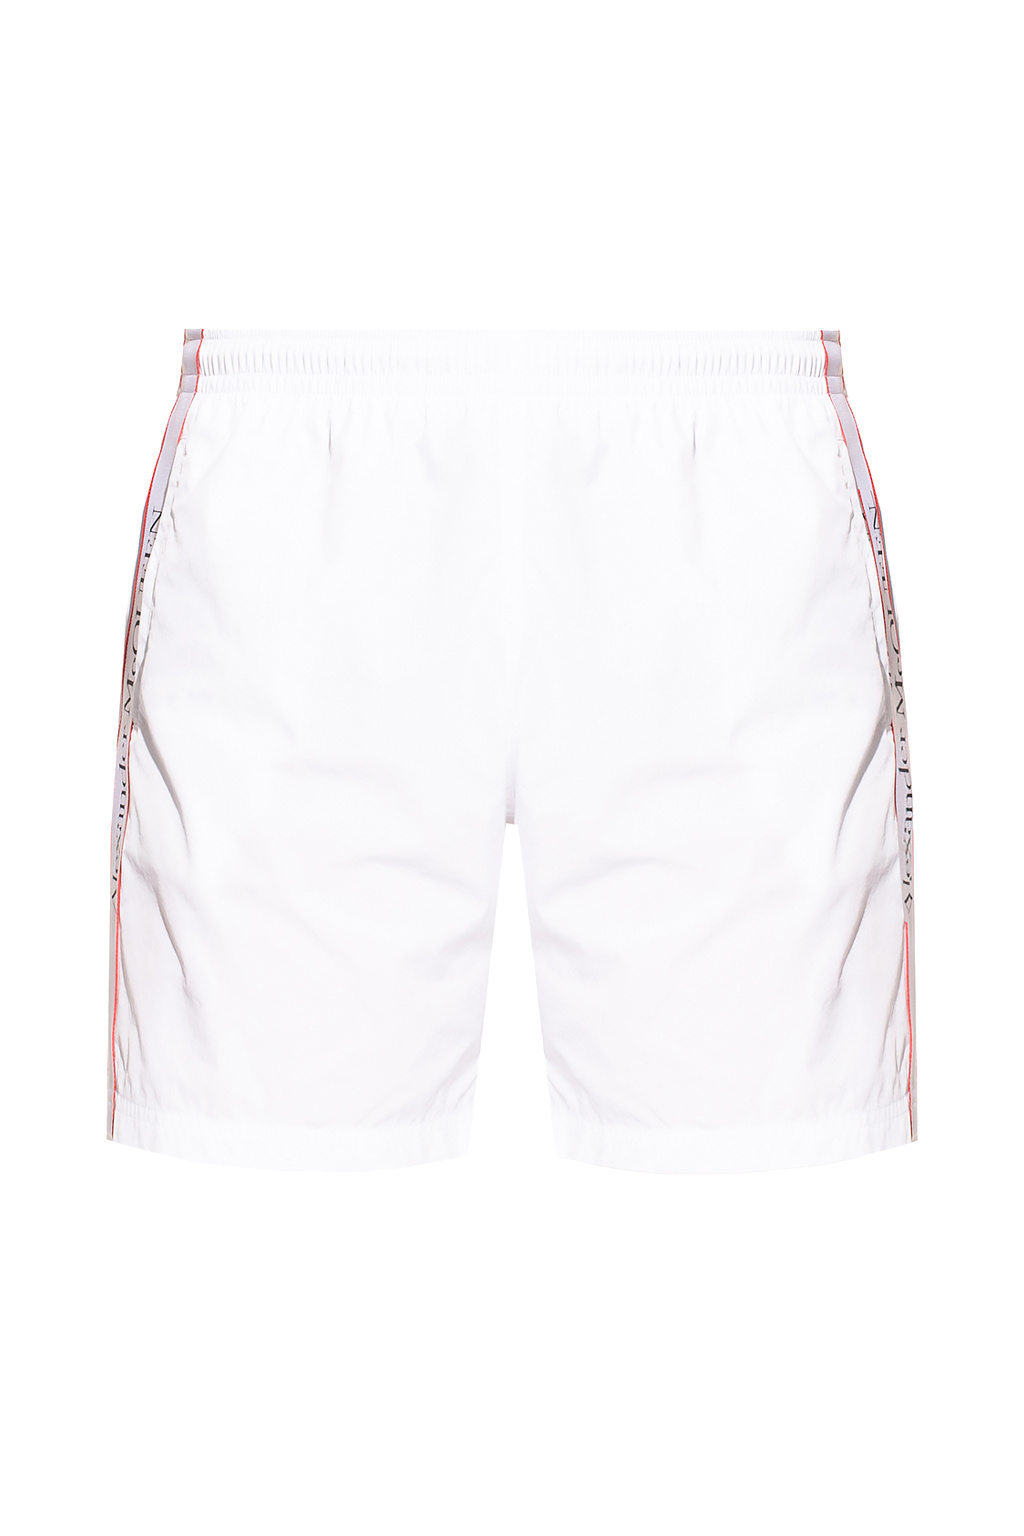 Alexander McQueen Swim shorts | Men's Clothing | IetpShops